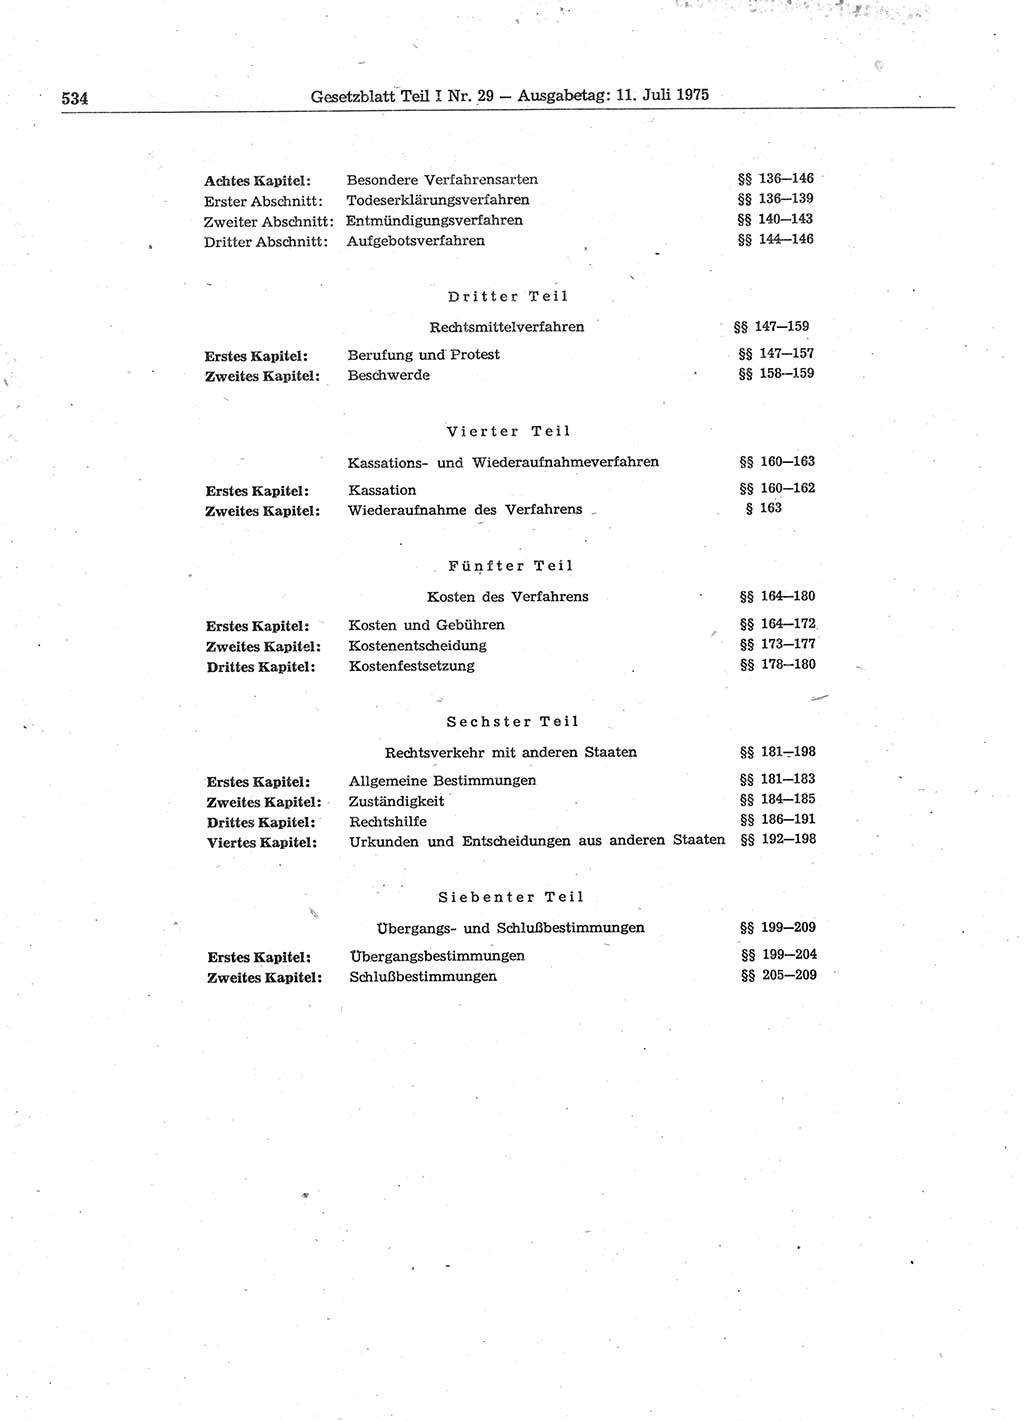 Gesetzblatt (GBl.) der Deutschen Demokratischen Republik (DDR) Teil Ⅰ 1975, Seite 534 (GBl. DDR Ⅰ 1975, S. 534)